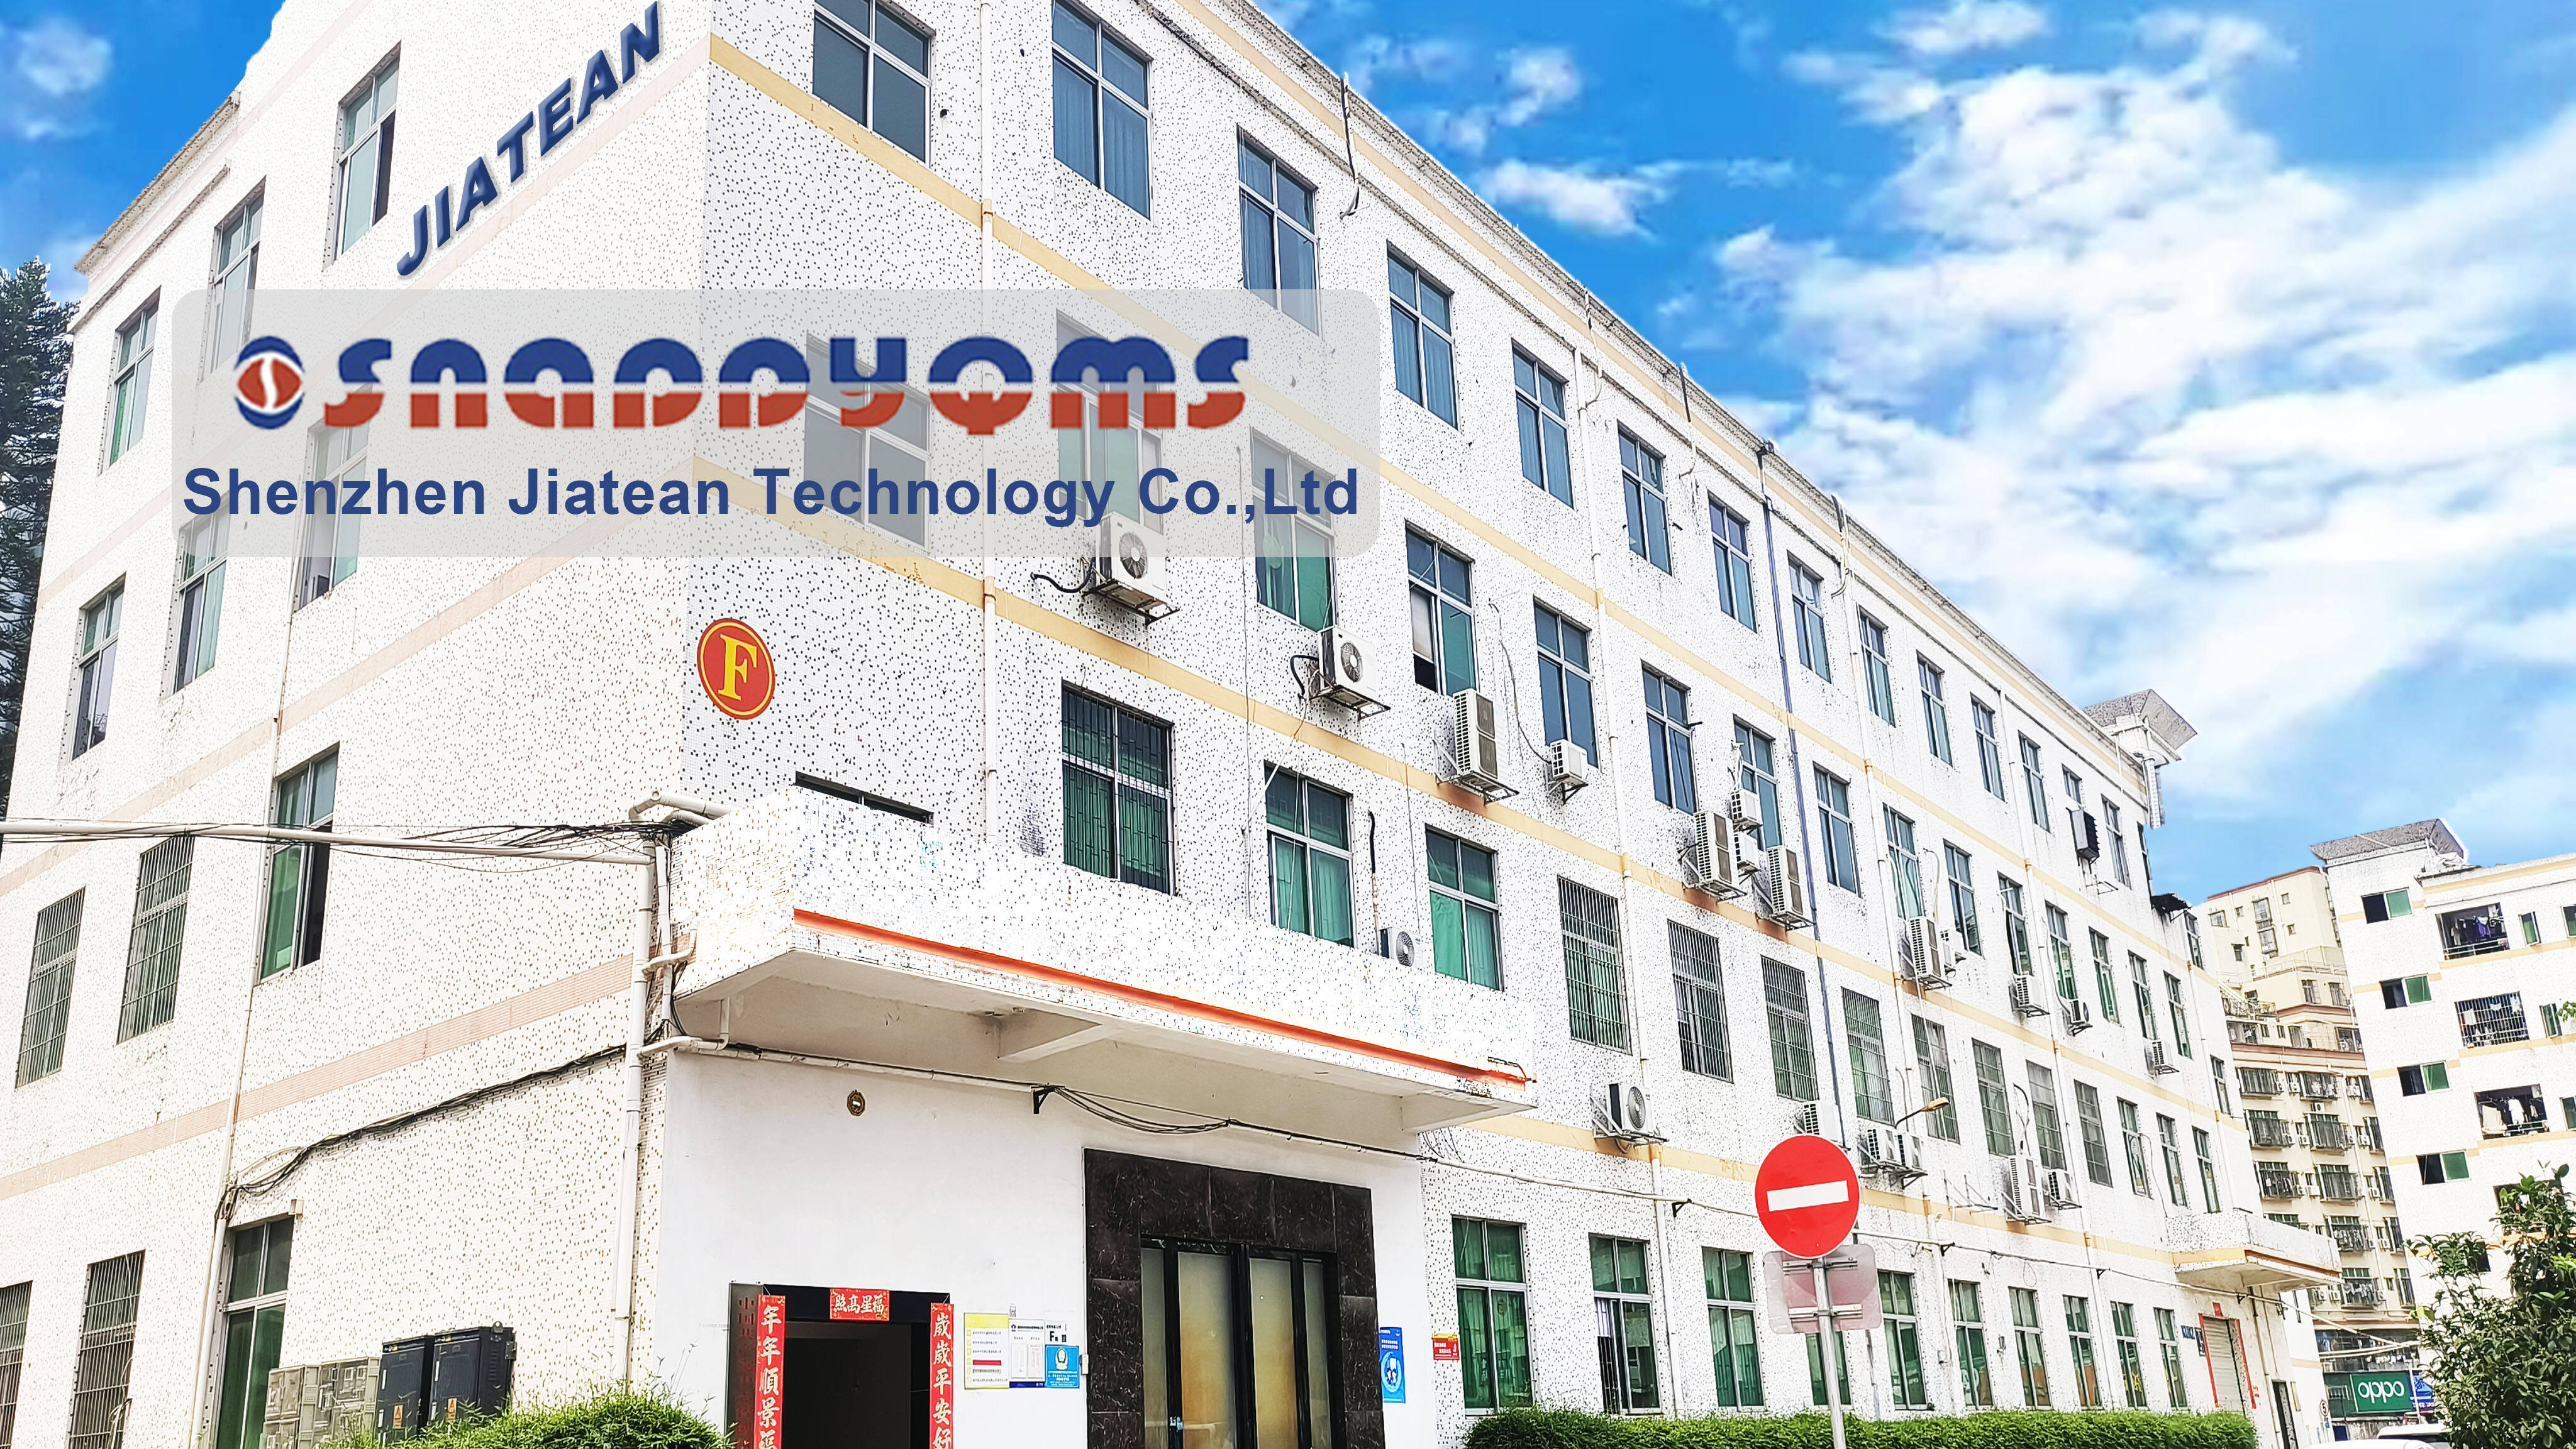 Shenzhen Jiatean Technology Co., ltd.